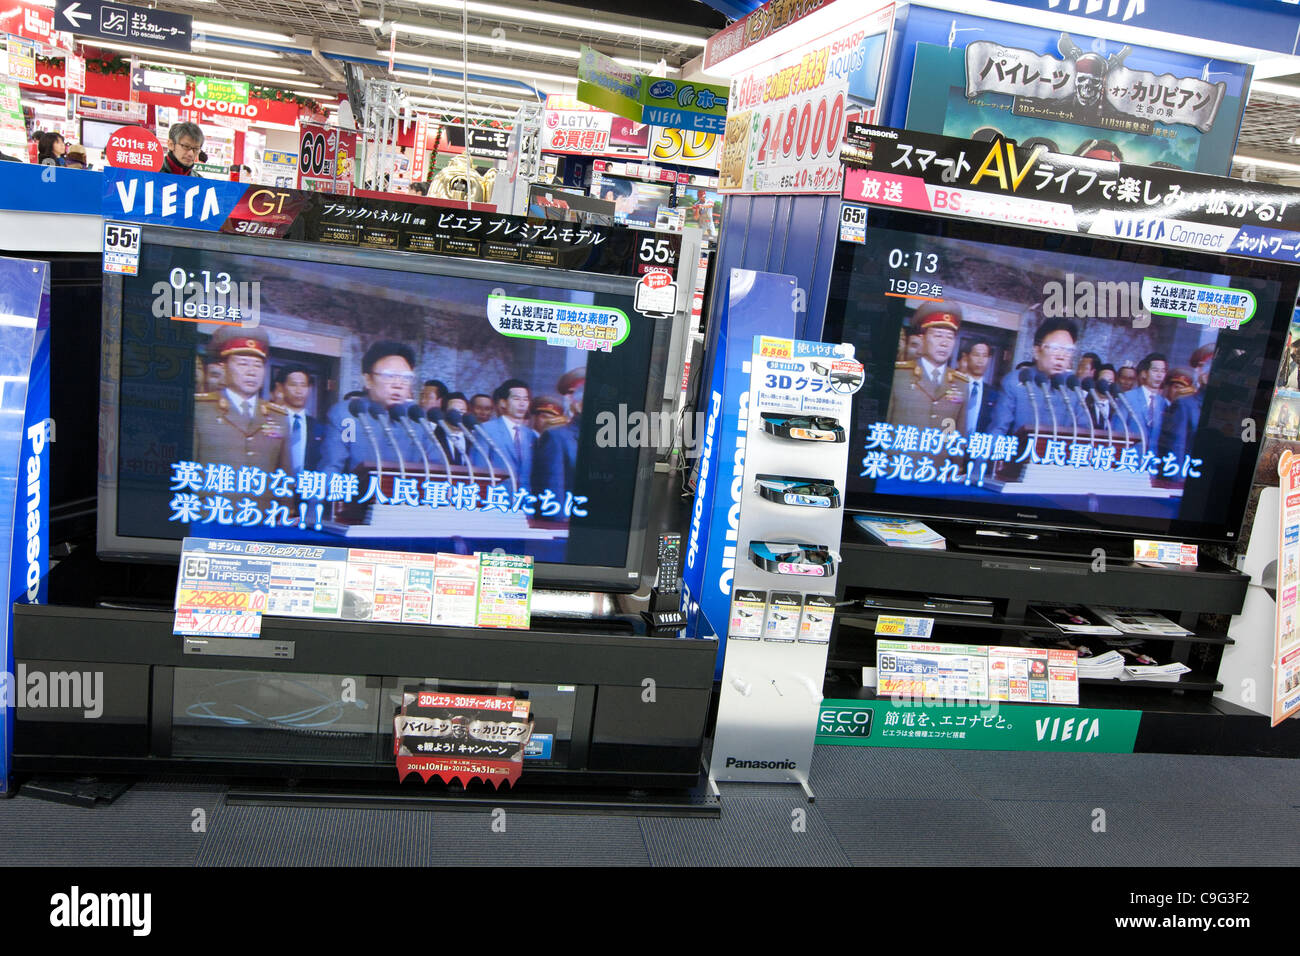 Immagini di Kim Jong-Il appaiono sulla televisione giapponese nella scia della sua morte e della sua transizione del potere di suo figlio Kim Jong-Un, in Tokyo, Giappone, martedì 20 dicembre 2011. Foto Stock